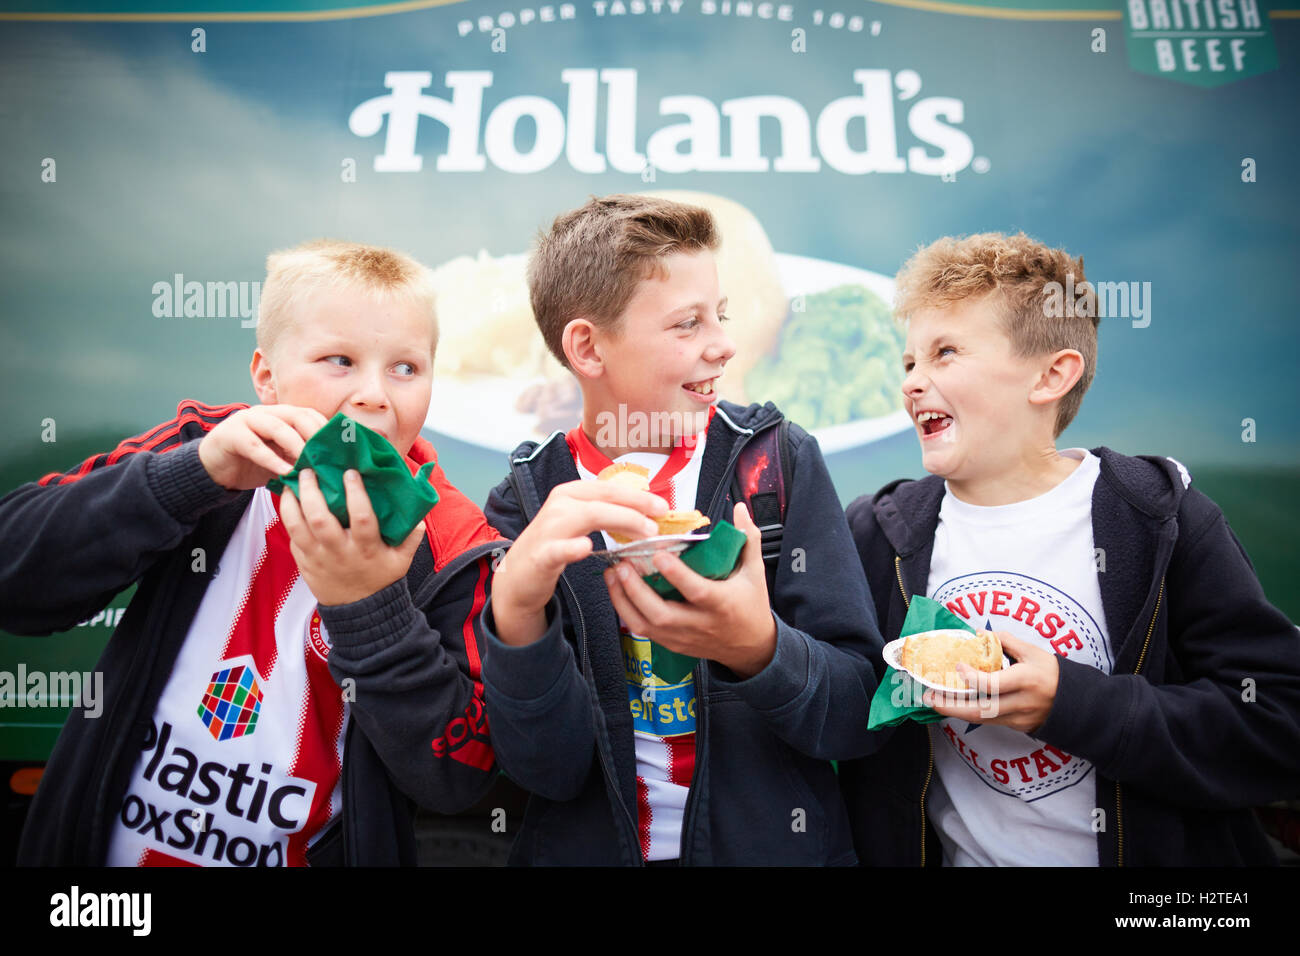 Per gli appassionati di calcio di mangiare torte Hollands Accrington Stanly FC fans match game mangiare torte felice ridere i bambini i bambini youngst Foto Stock